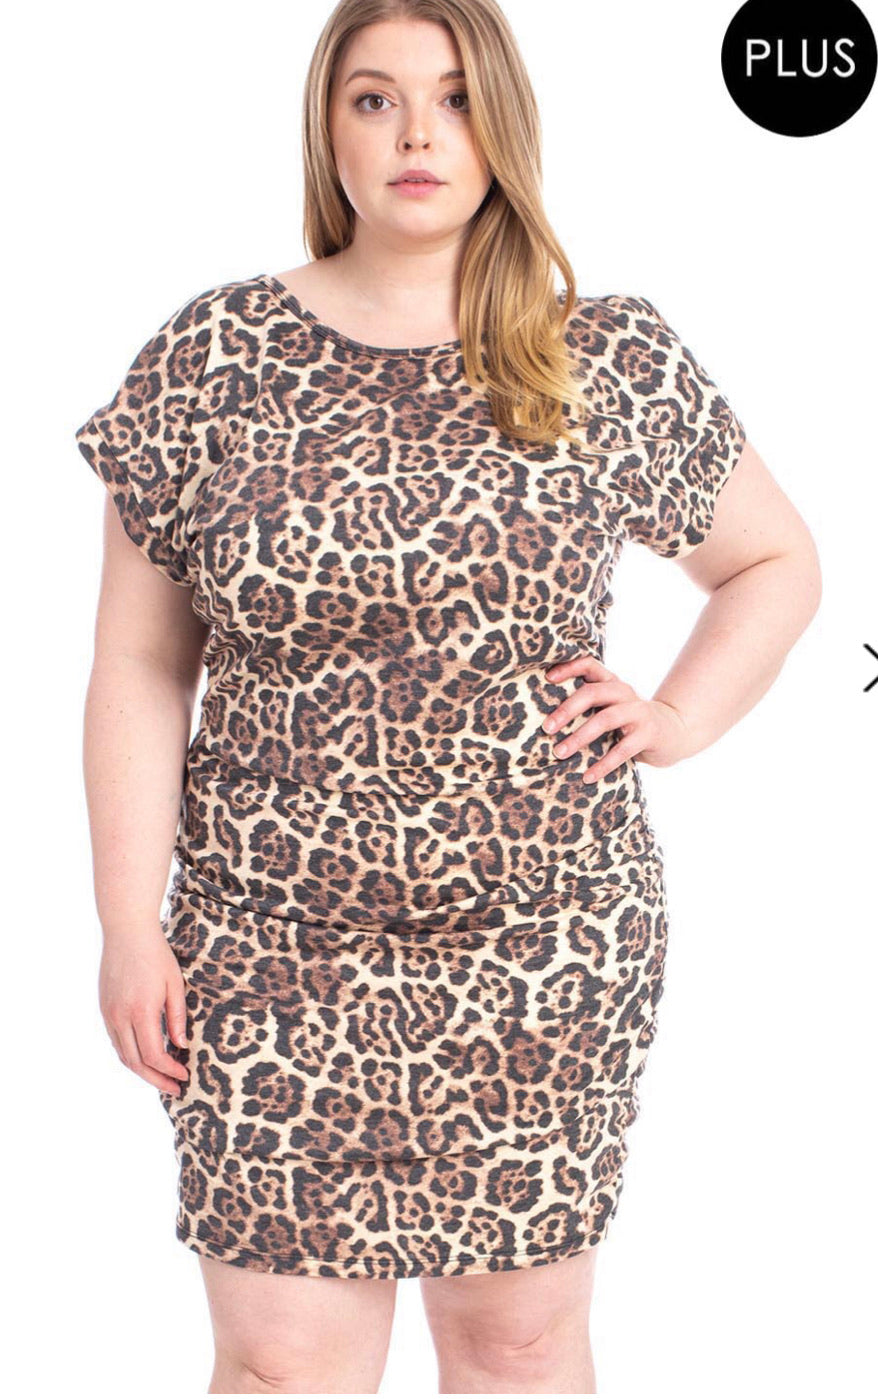 Leopard Print Soft Fabric Plus Size Mini Dress